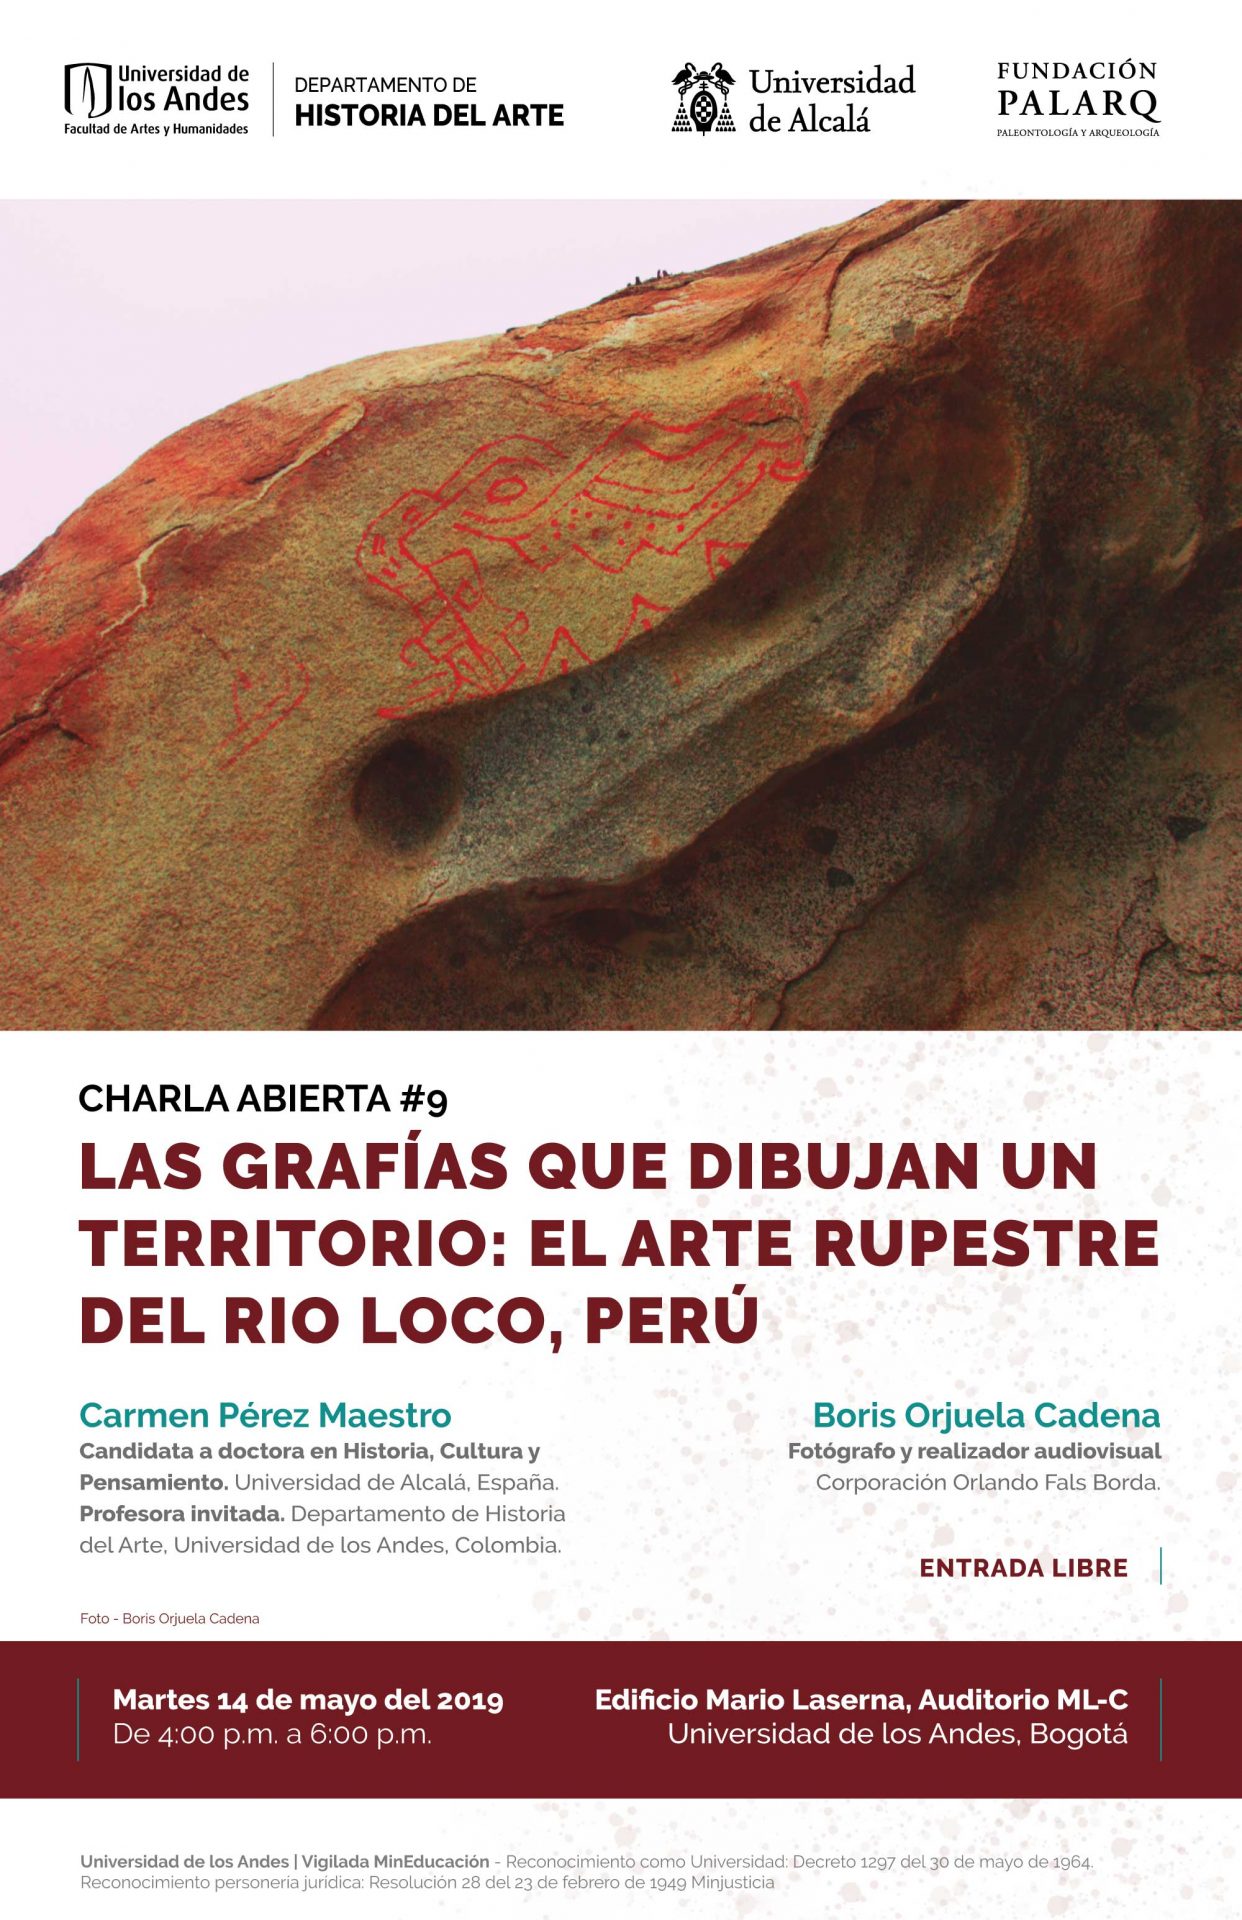 Charla abierta #9 - Las grafías que dibujan un territorio: el arte rupestre del Rio loco, Perú